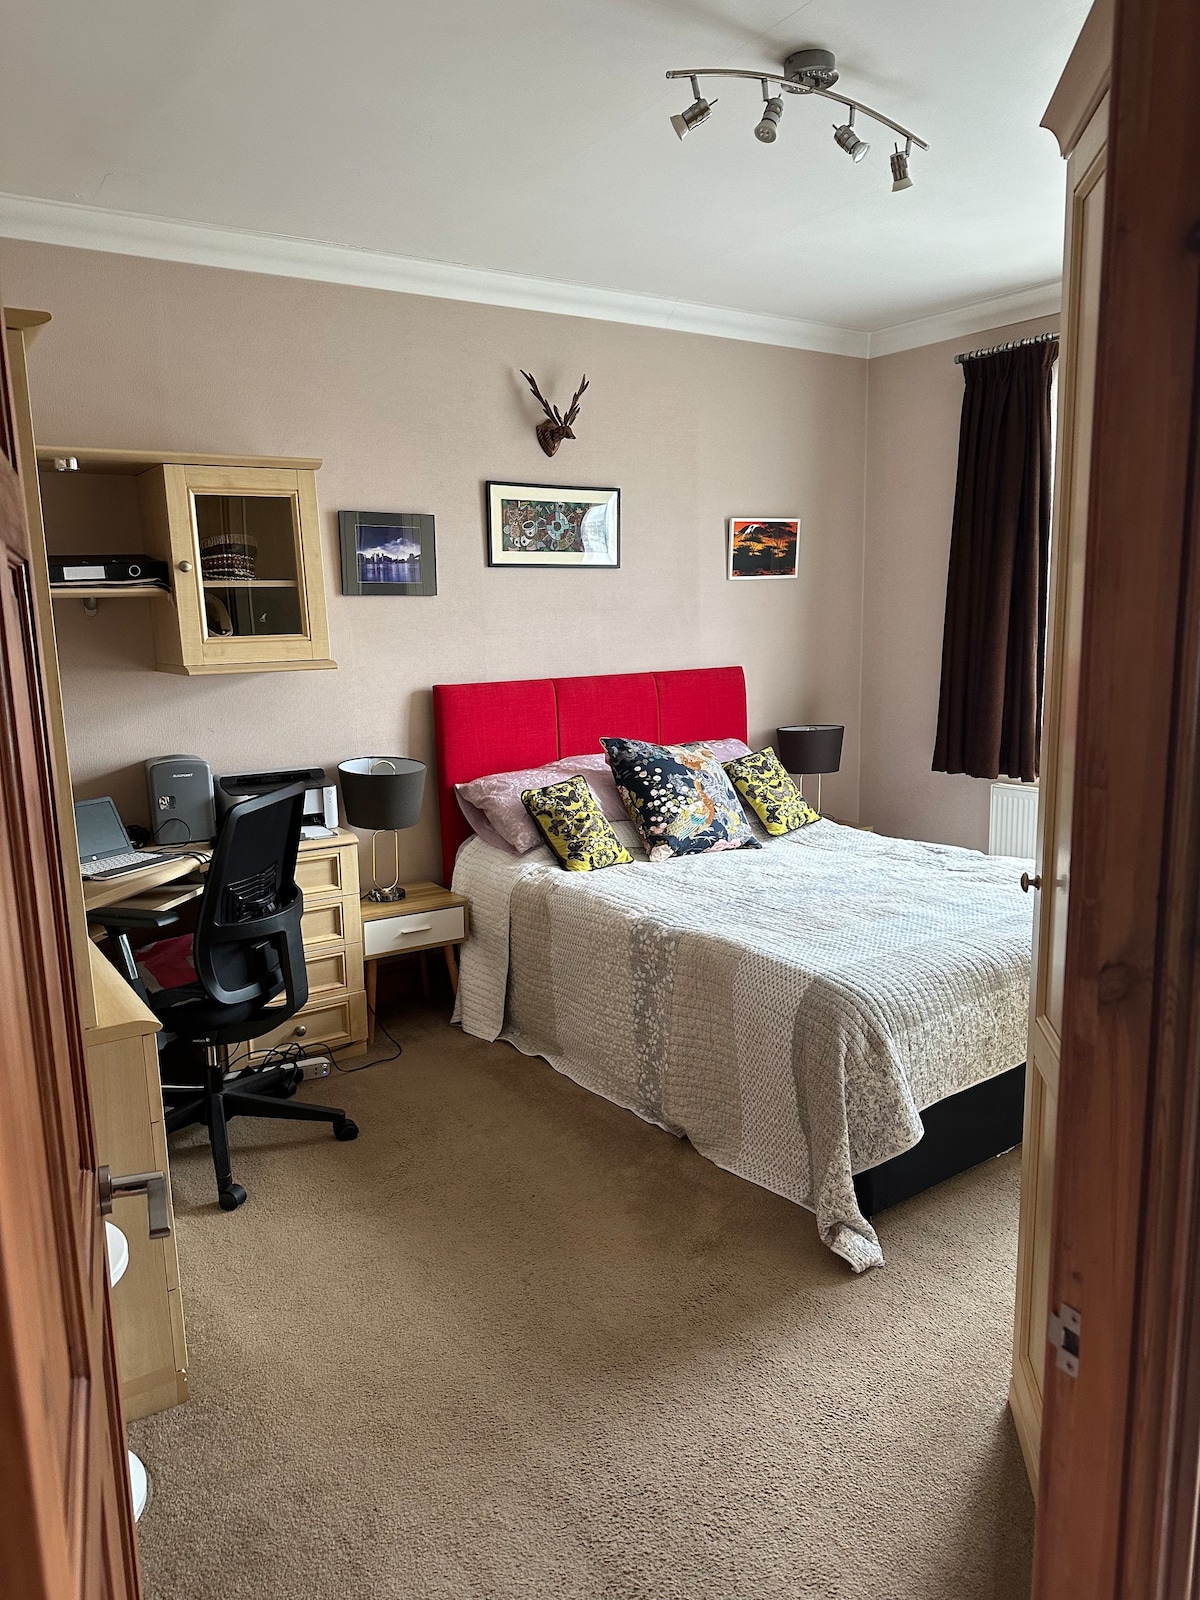 Spacious Double Room, East London, near A406